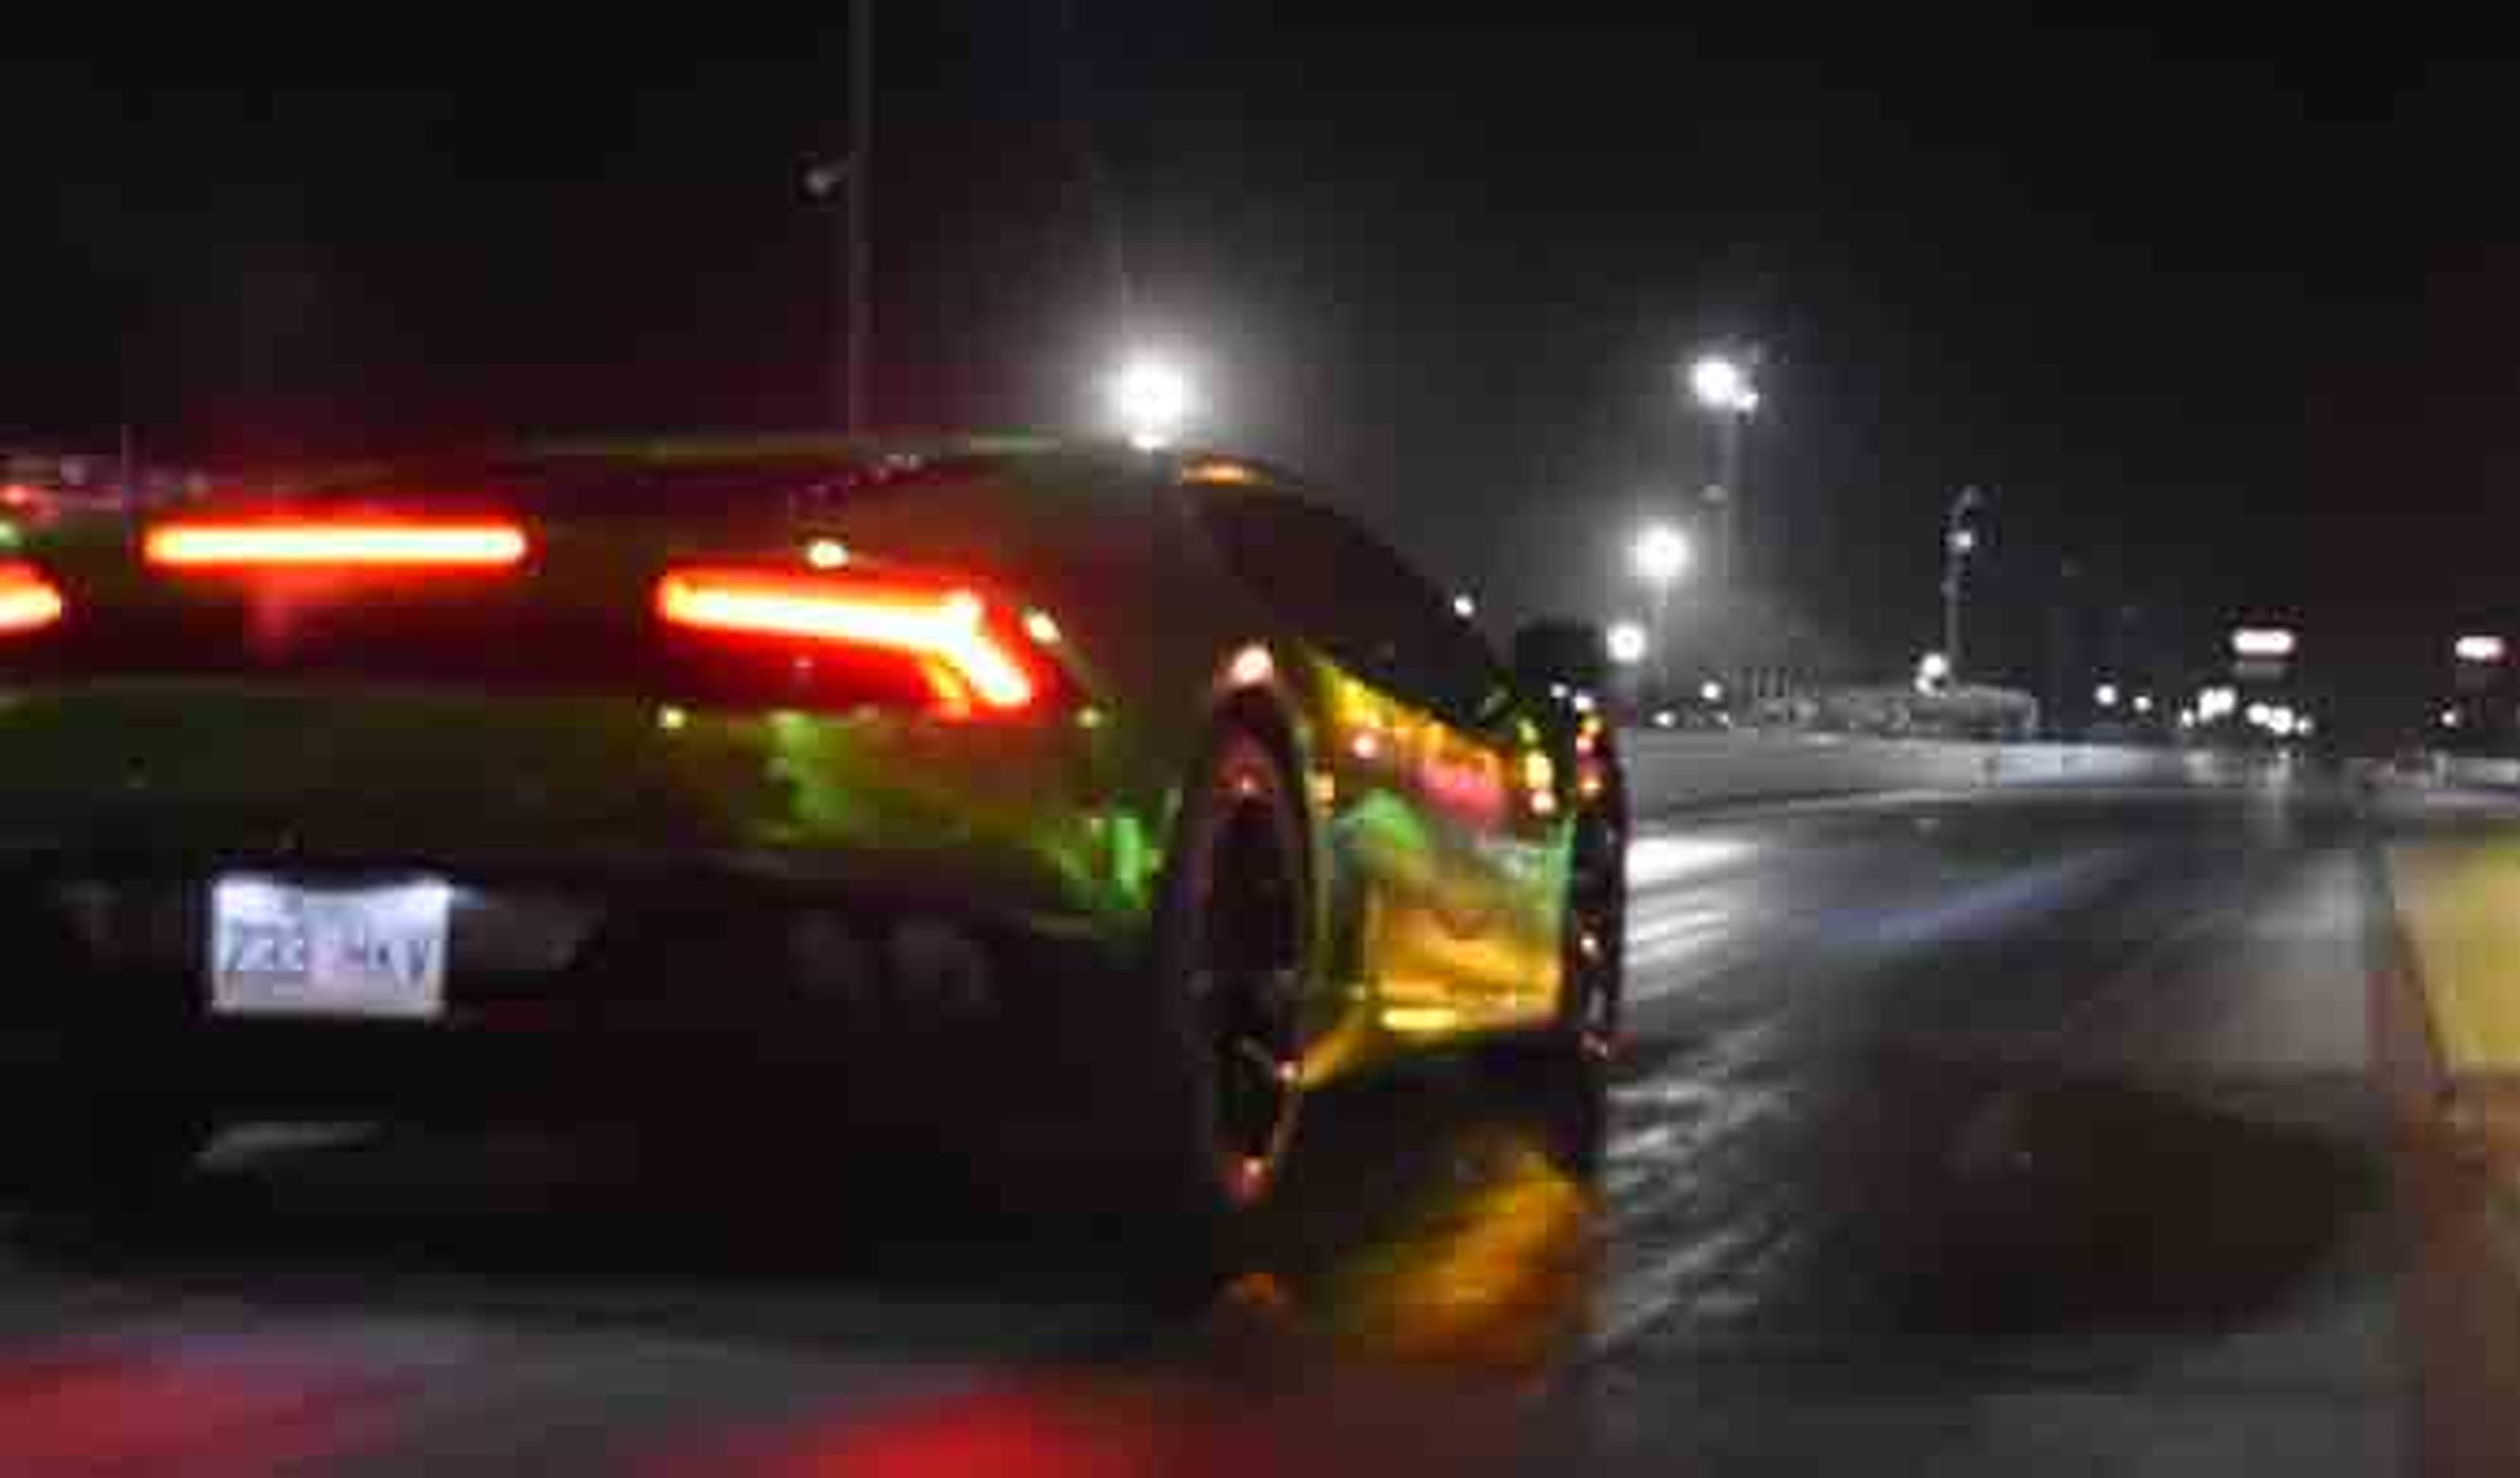 Vídeo: este Lamborghini Huracan da miedo